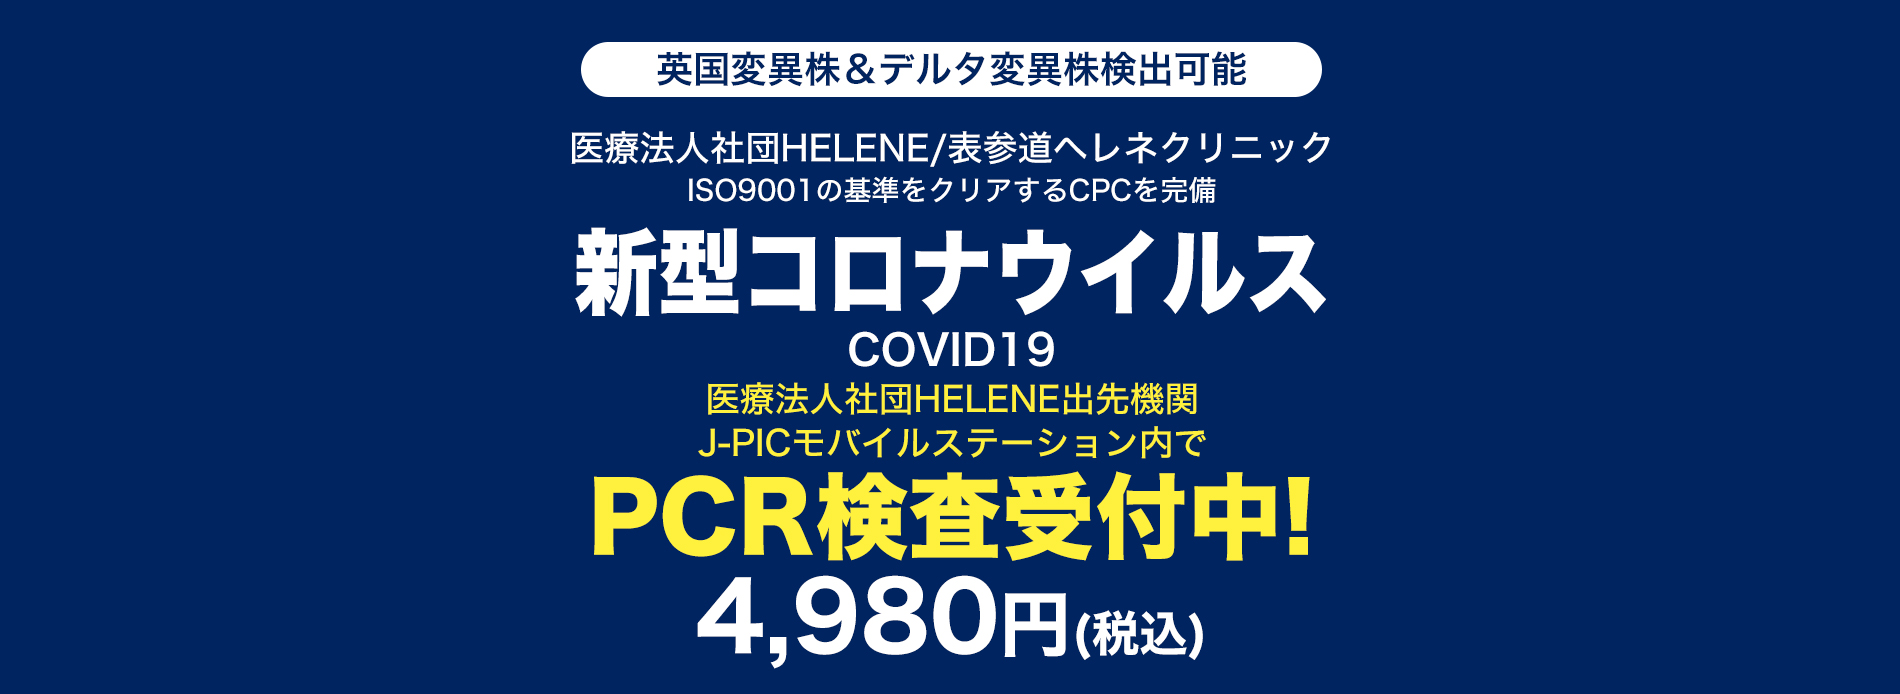 JPICモバイルステーションのPCR検査受付店舗一覧